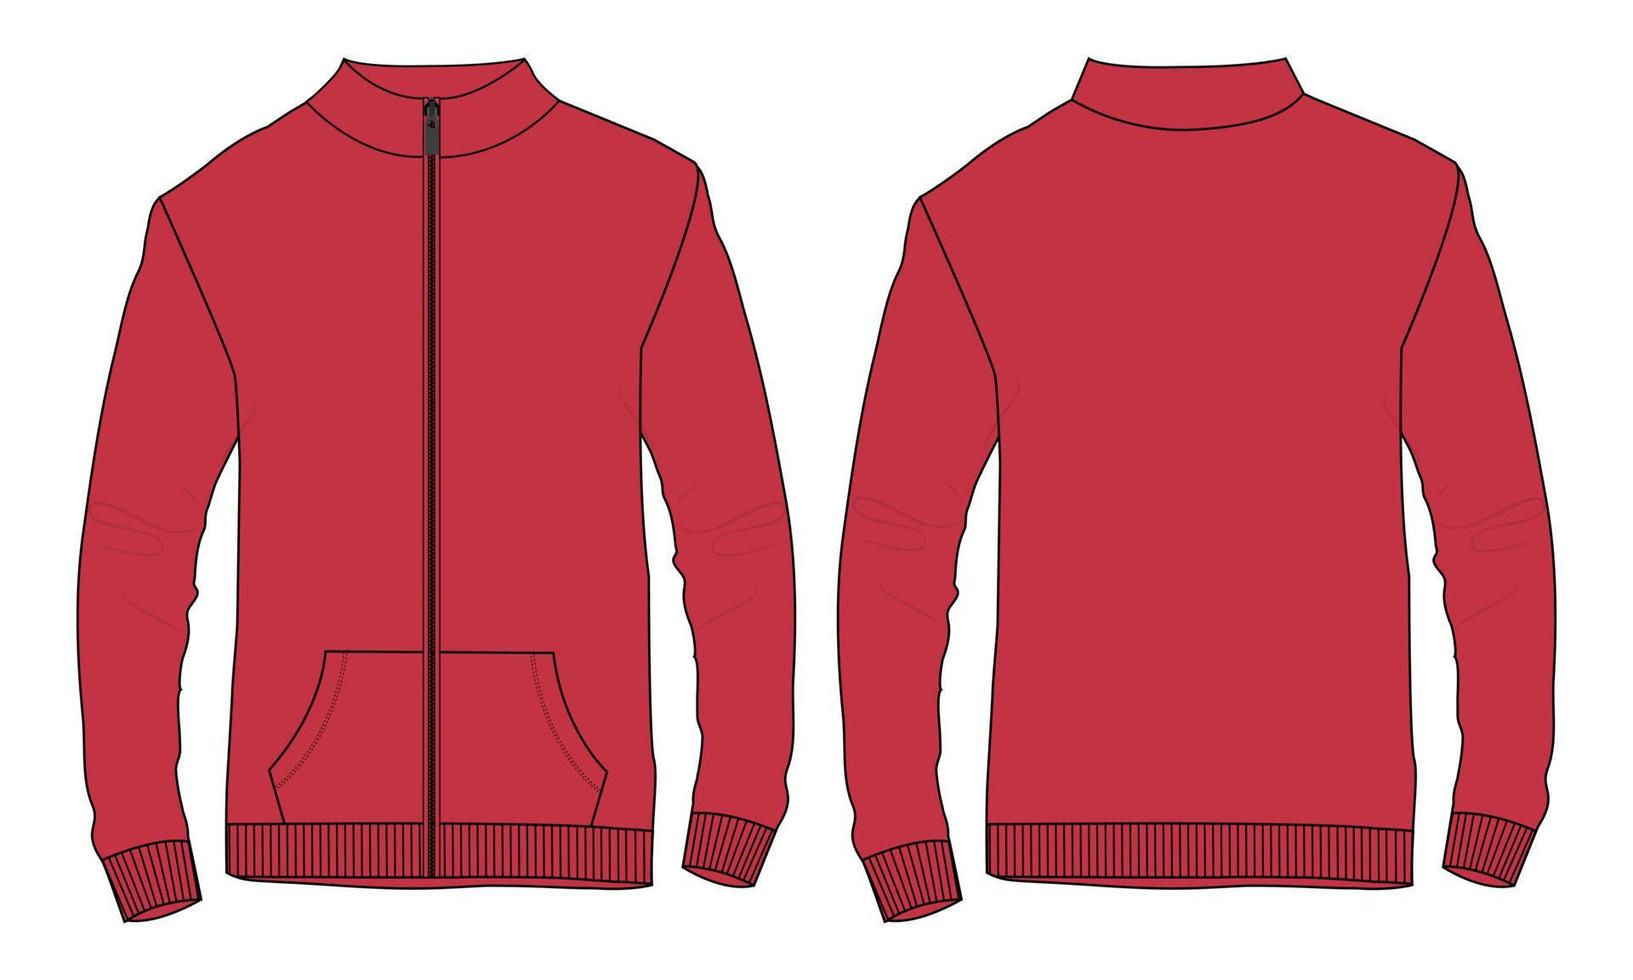 chaqueta de manga larga moda técnica boceto plano ilustración vectorial plantilla de color rojo vistas frontal y posterior. bomber jacket mock up cad edición fácil y personalizable. vector